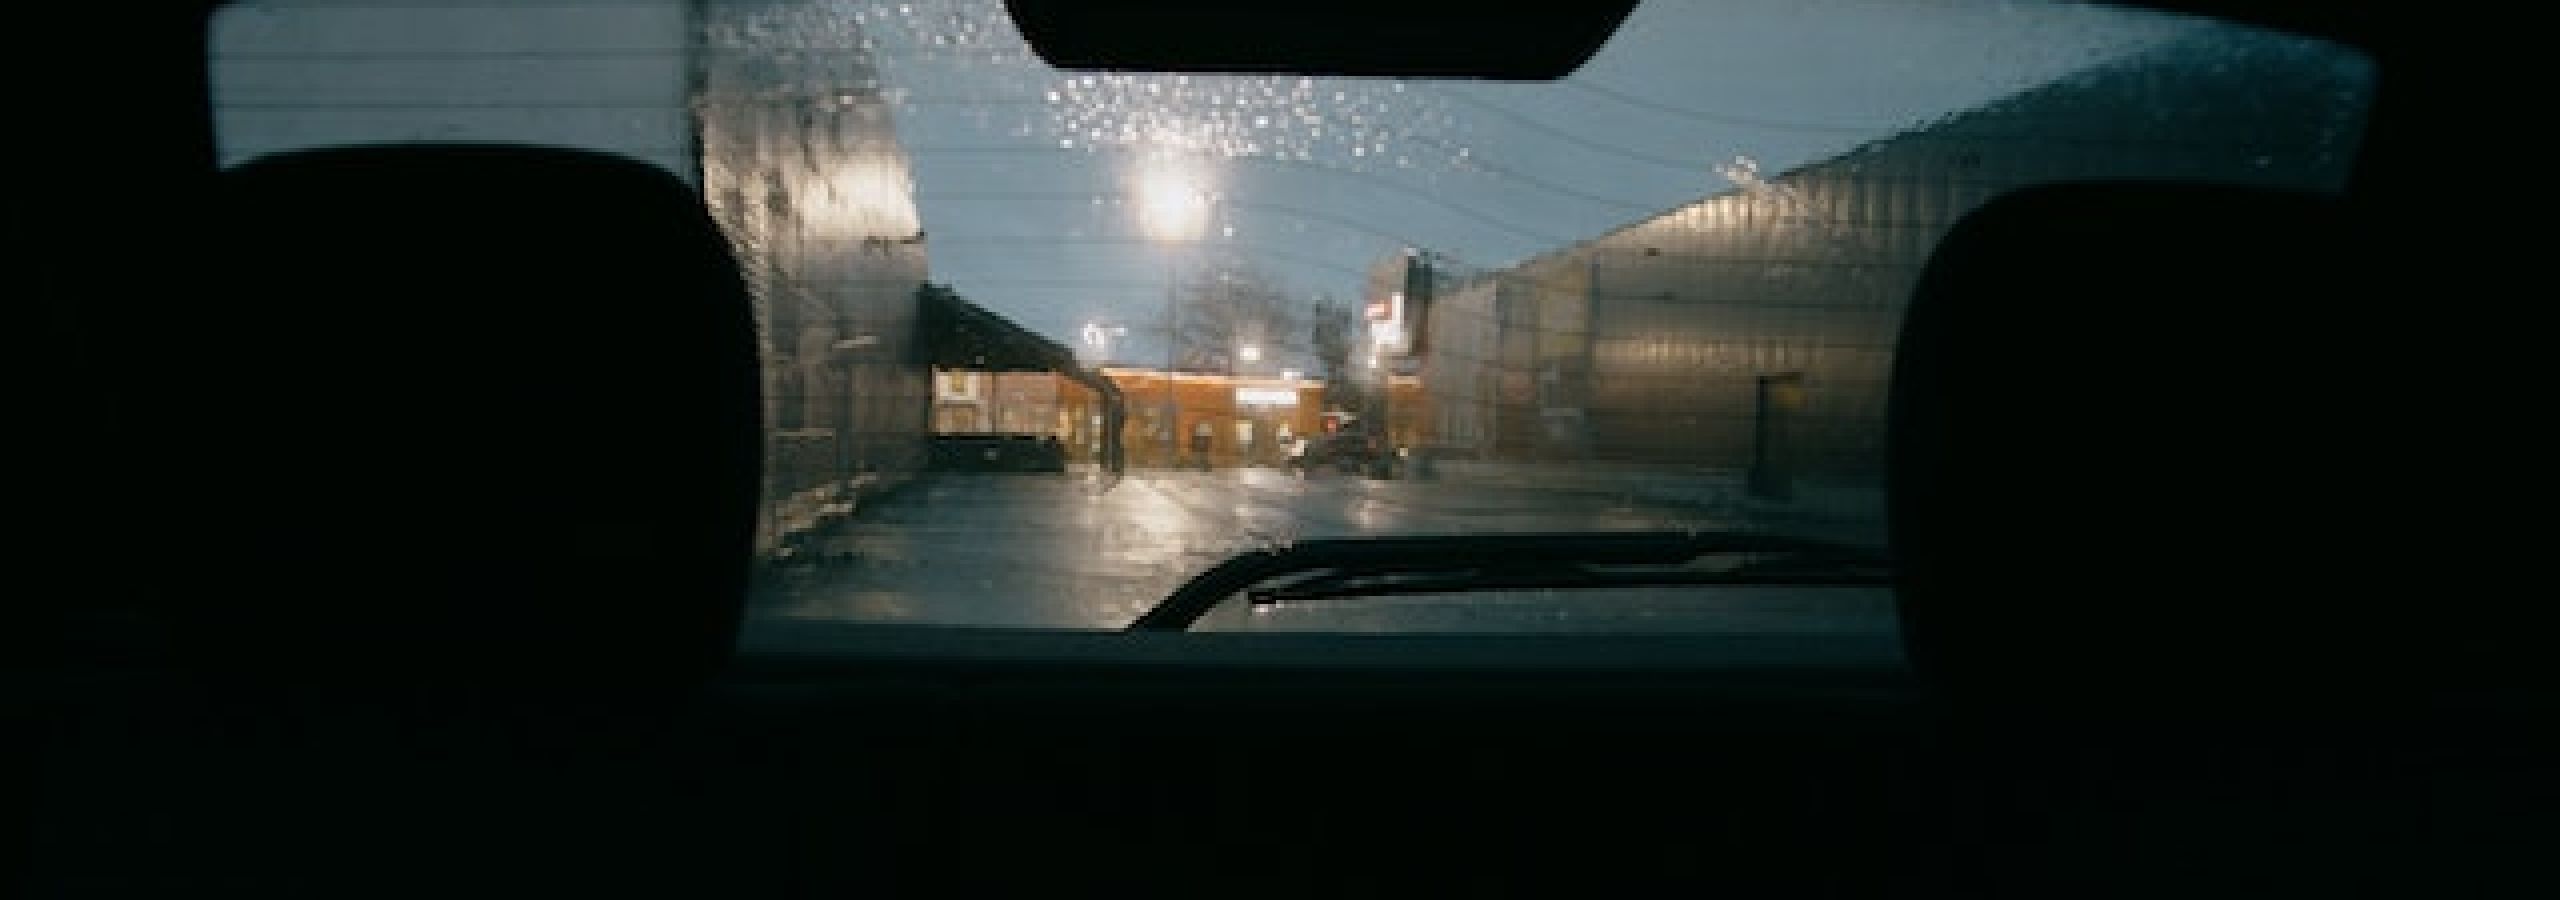 photo of car rear window